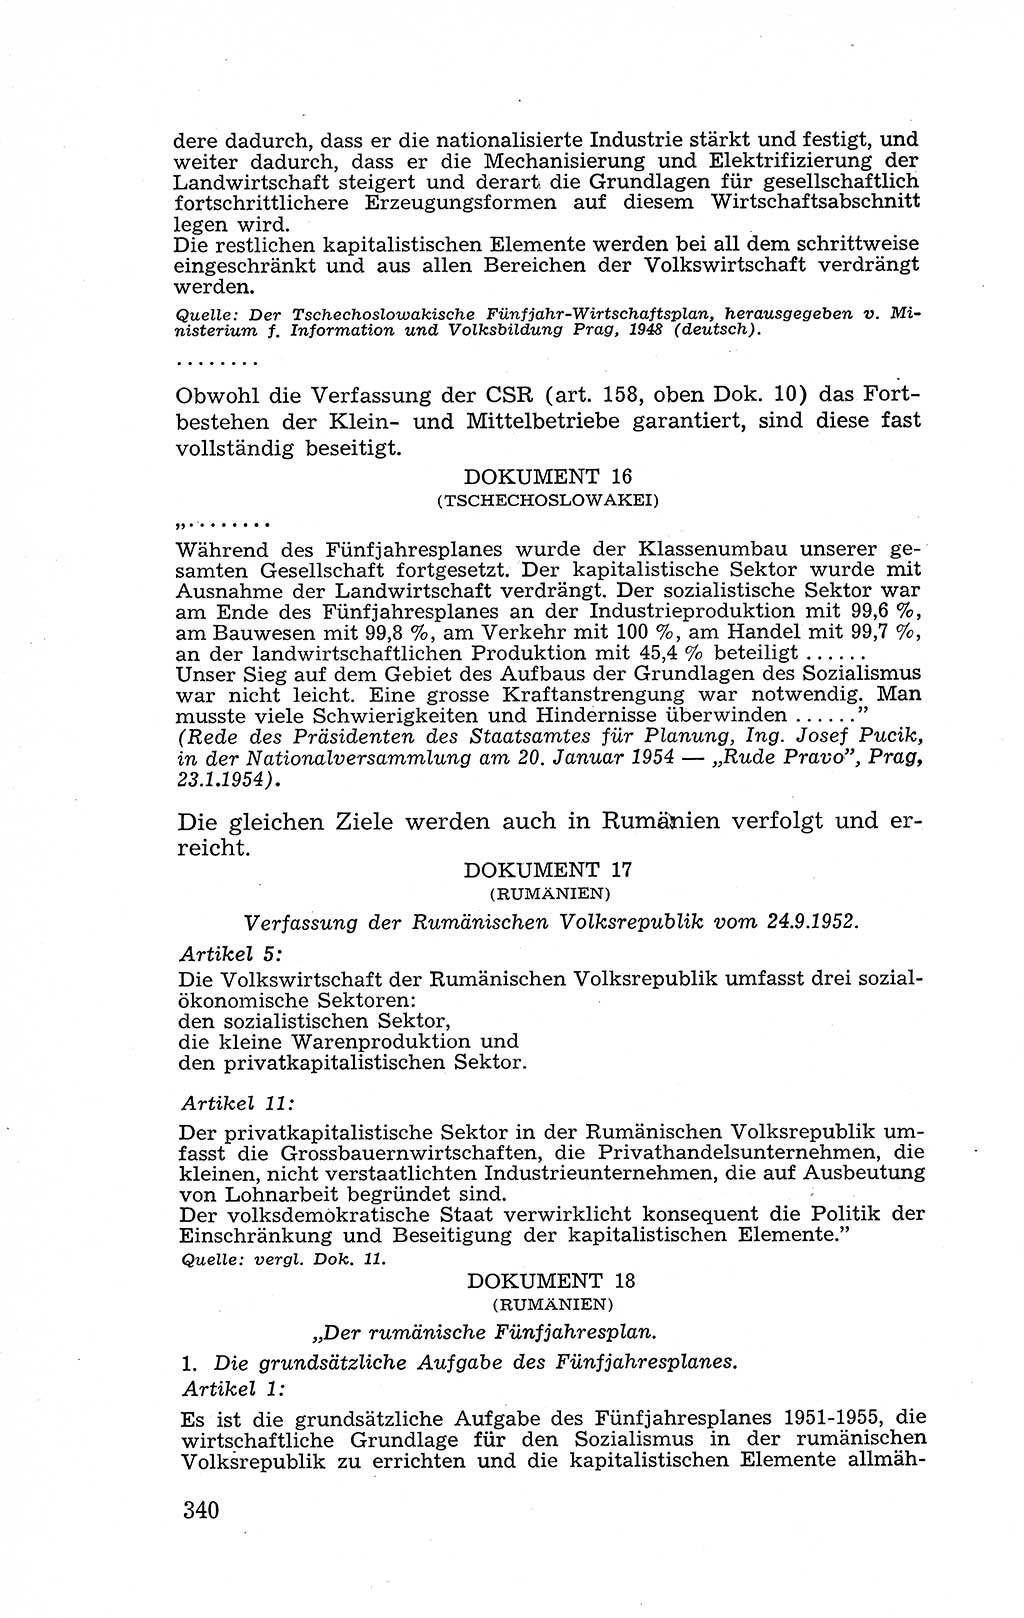 Recht in Fesseln, Dokumente, Internationale Juristen-Kommission [Bundesrepublik Deutschland (BRD)] 1955, Seite 340 (R. Dok. IJK BRD 1955, S. 340)